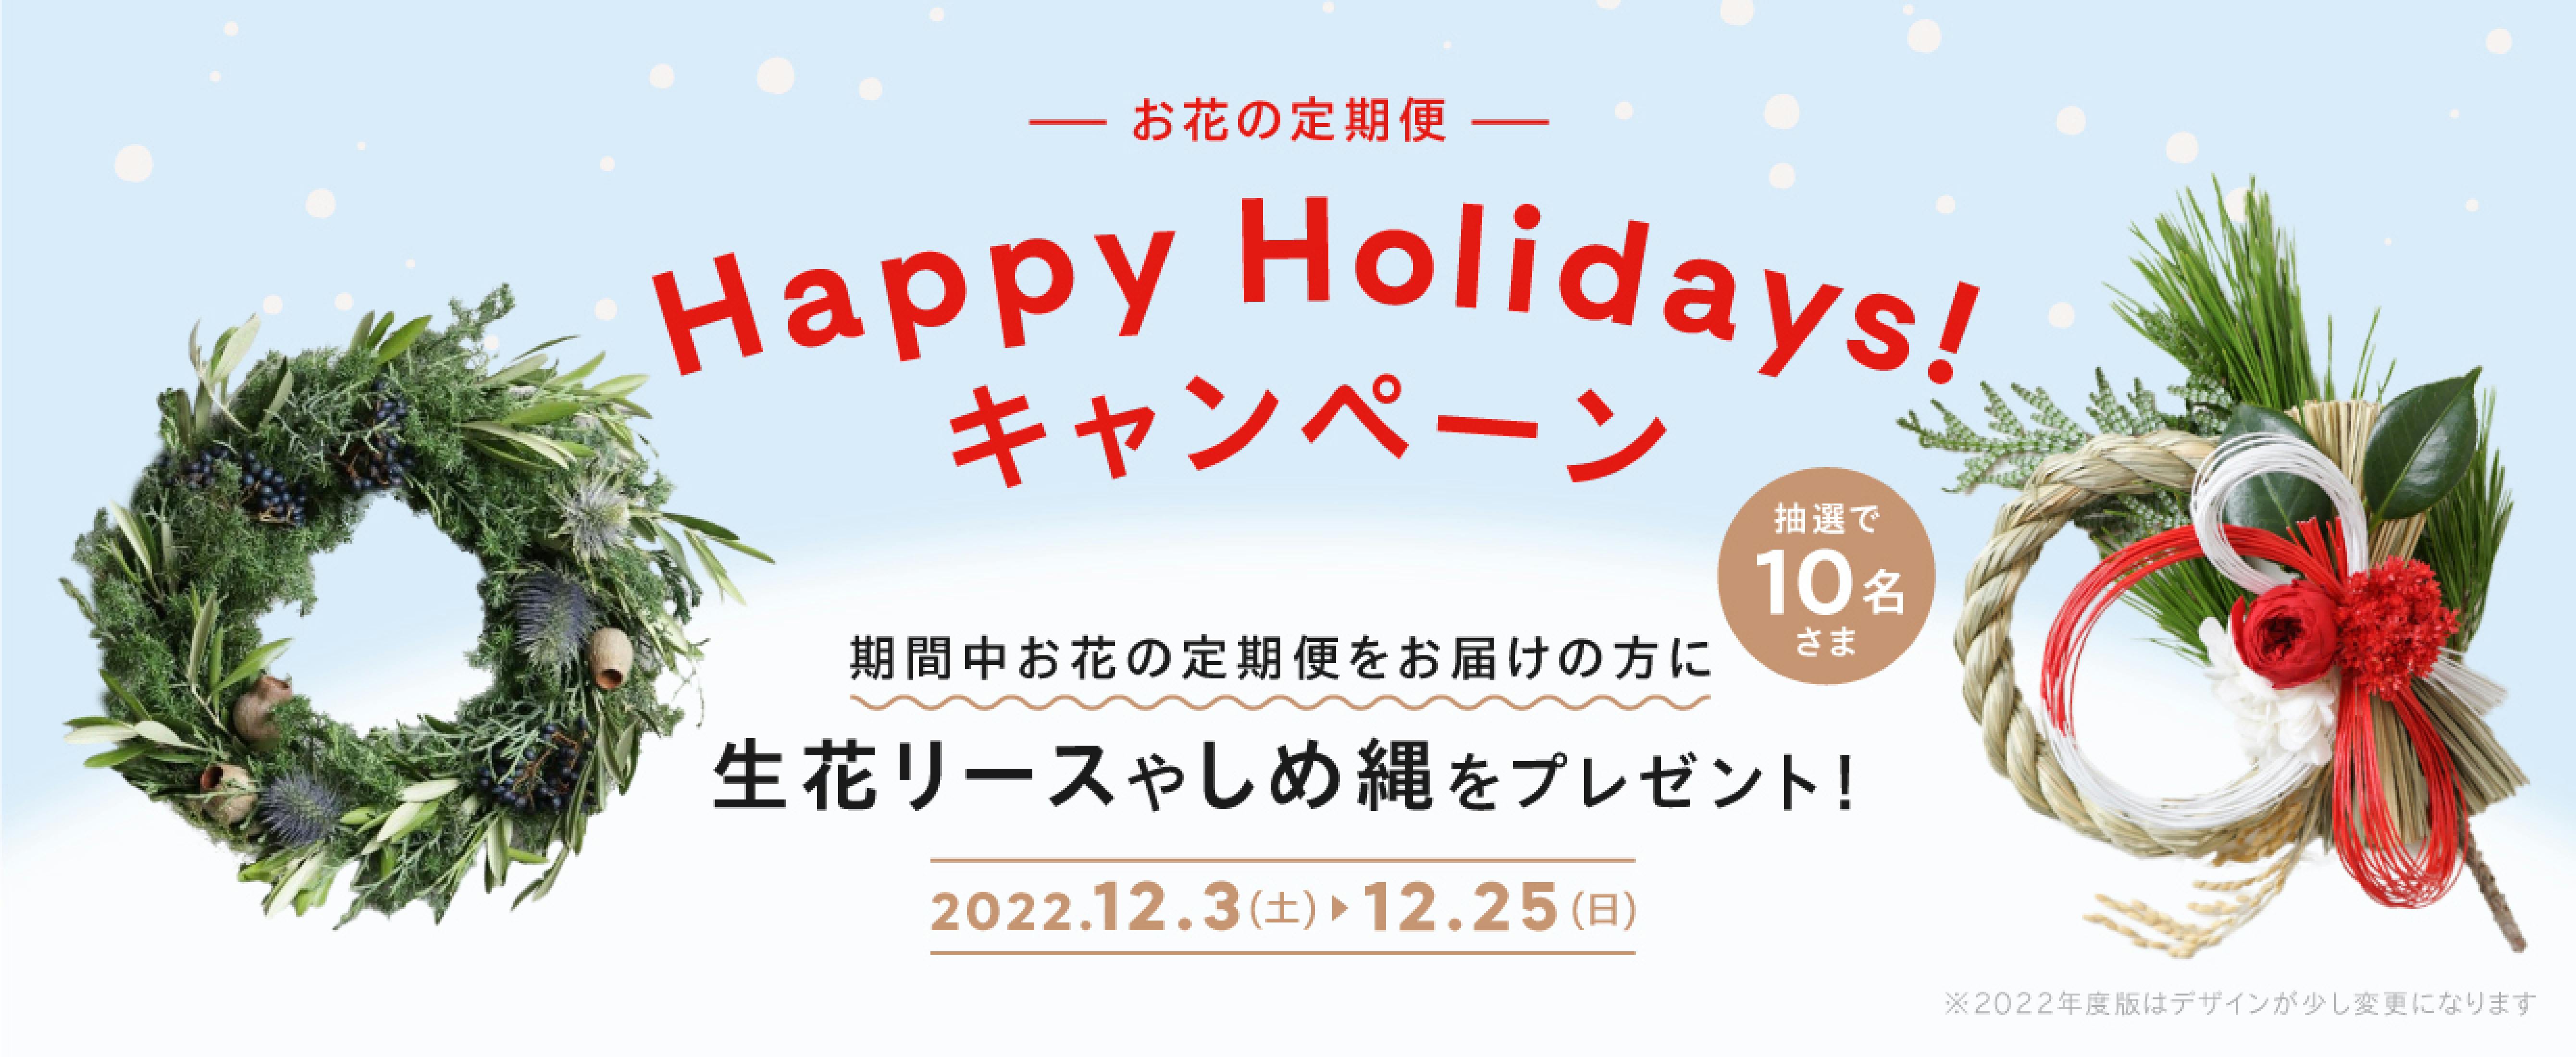 お花の定期便 "Happy Holidays!" キャンペーン - お花と植物のギフト通販 HitoHana（ひとはな）